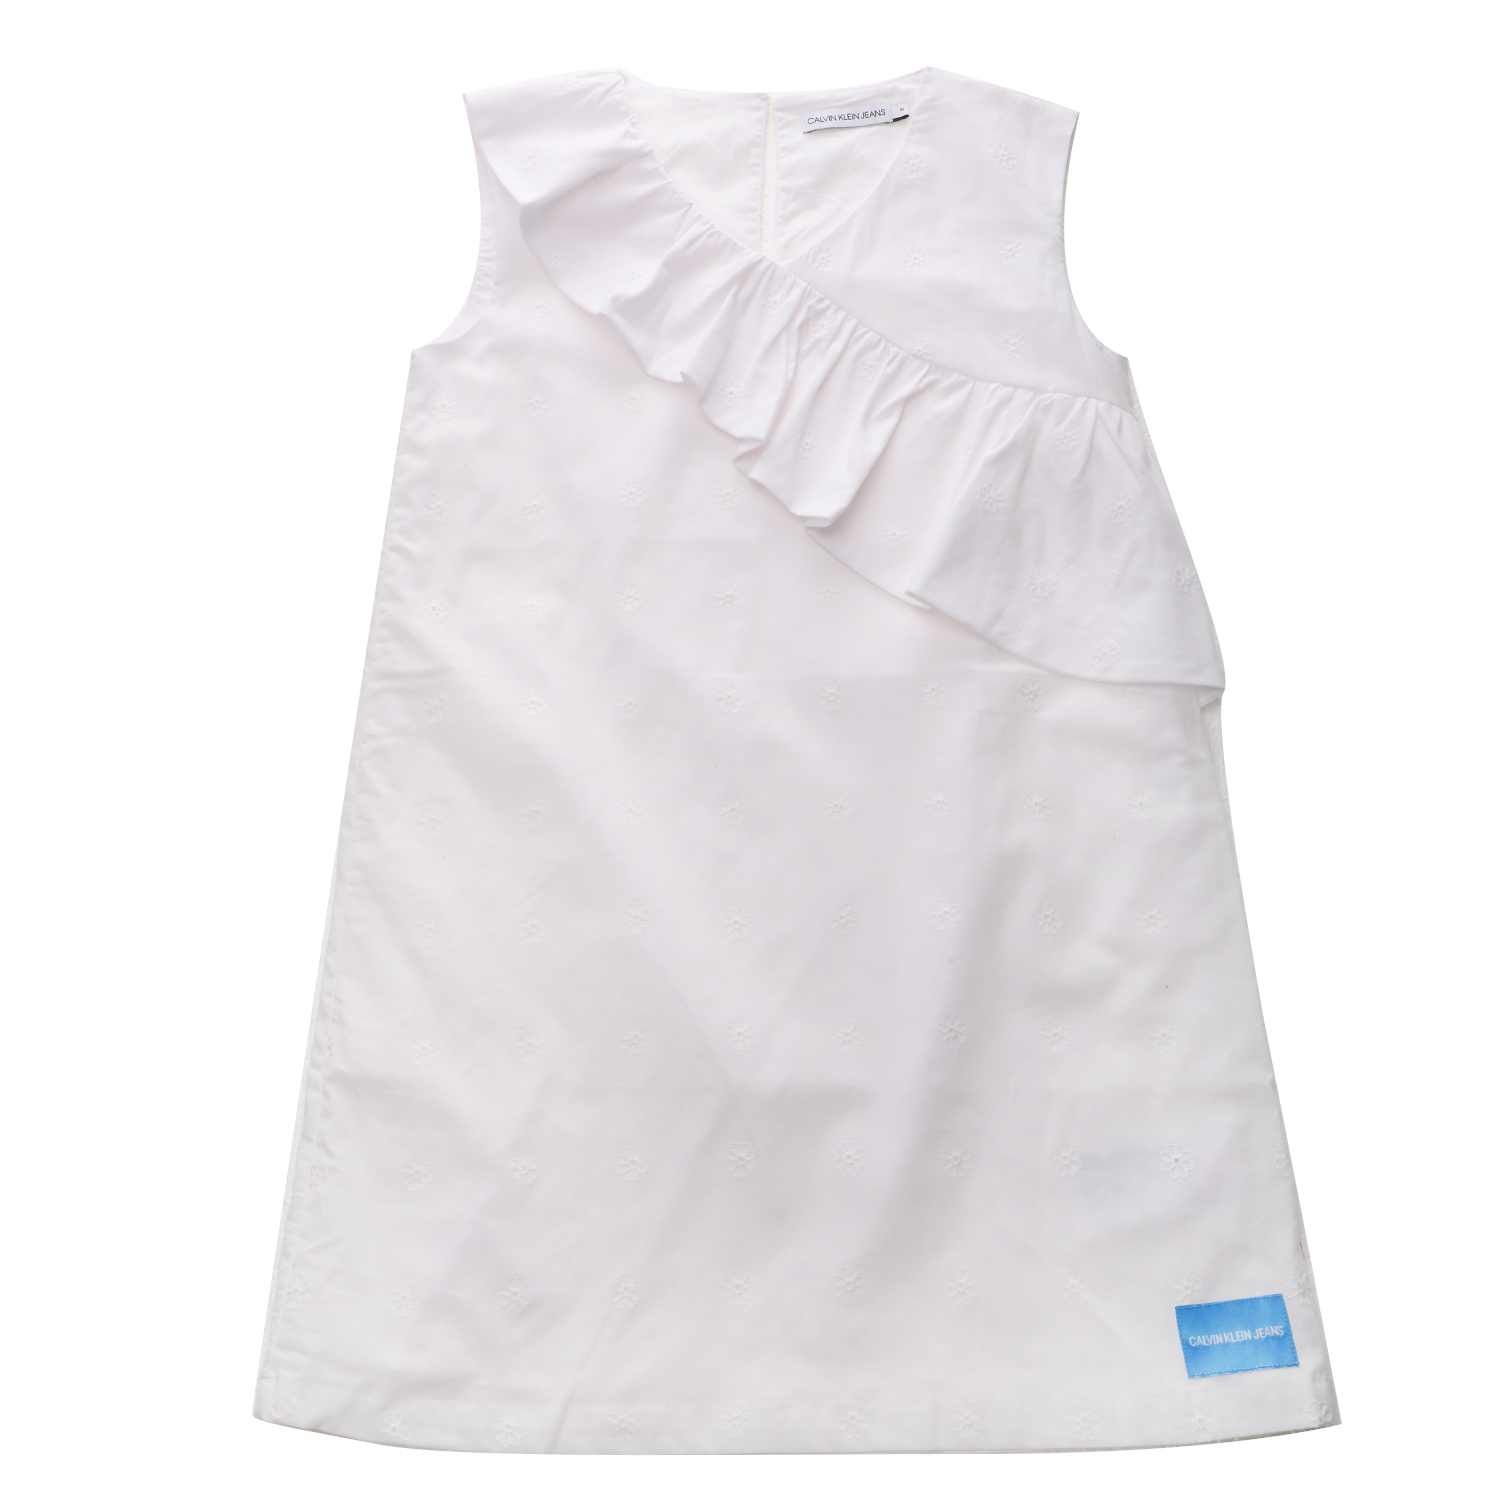 Παιδικά/Girls/Ρούχα/Φορέματα Κοντομάνικα-Αμάνικα CALVIN KLEIN JEANS KIDS - Παιδικό mini φόρεμα CALVIN KLEIN JEANS KIDS λευκό